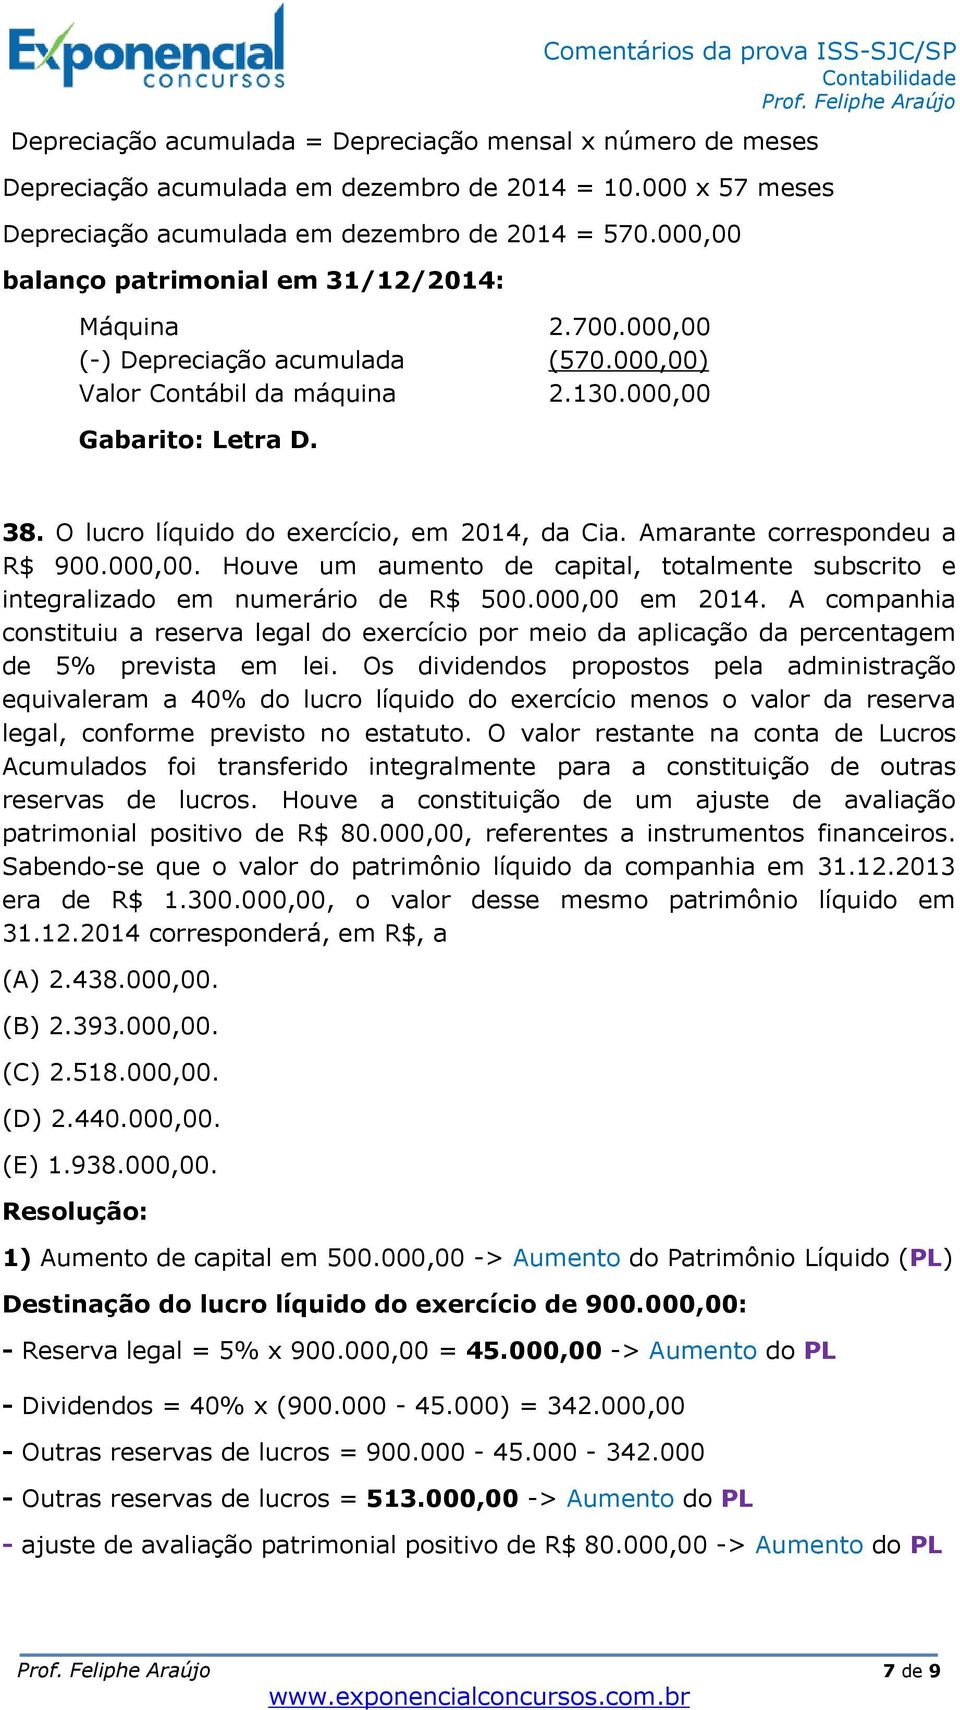 O lucro líquido do exercício, em 2014, da Cia. Amarante correspondeu a R$ 900.000,00. Houve um aumento de capital, totalmente subscrito e integralizado em numerário de R$ 500.000,00 em 2014.